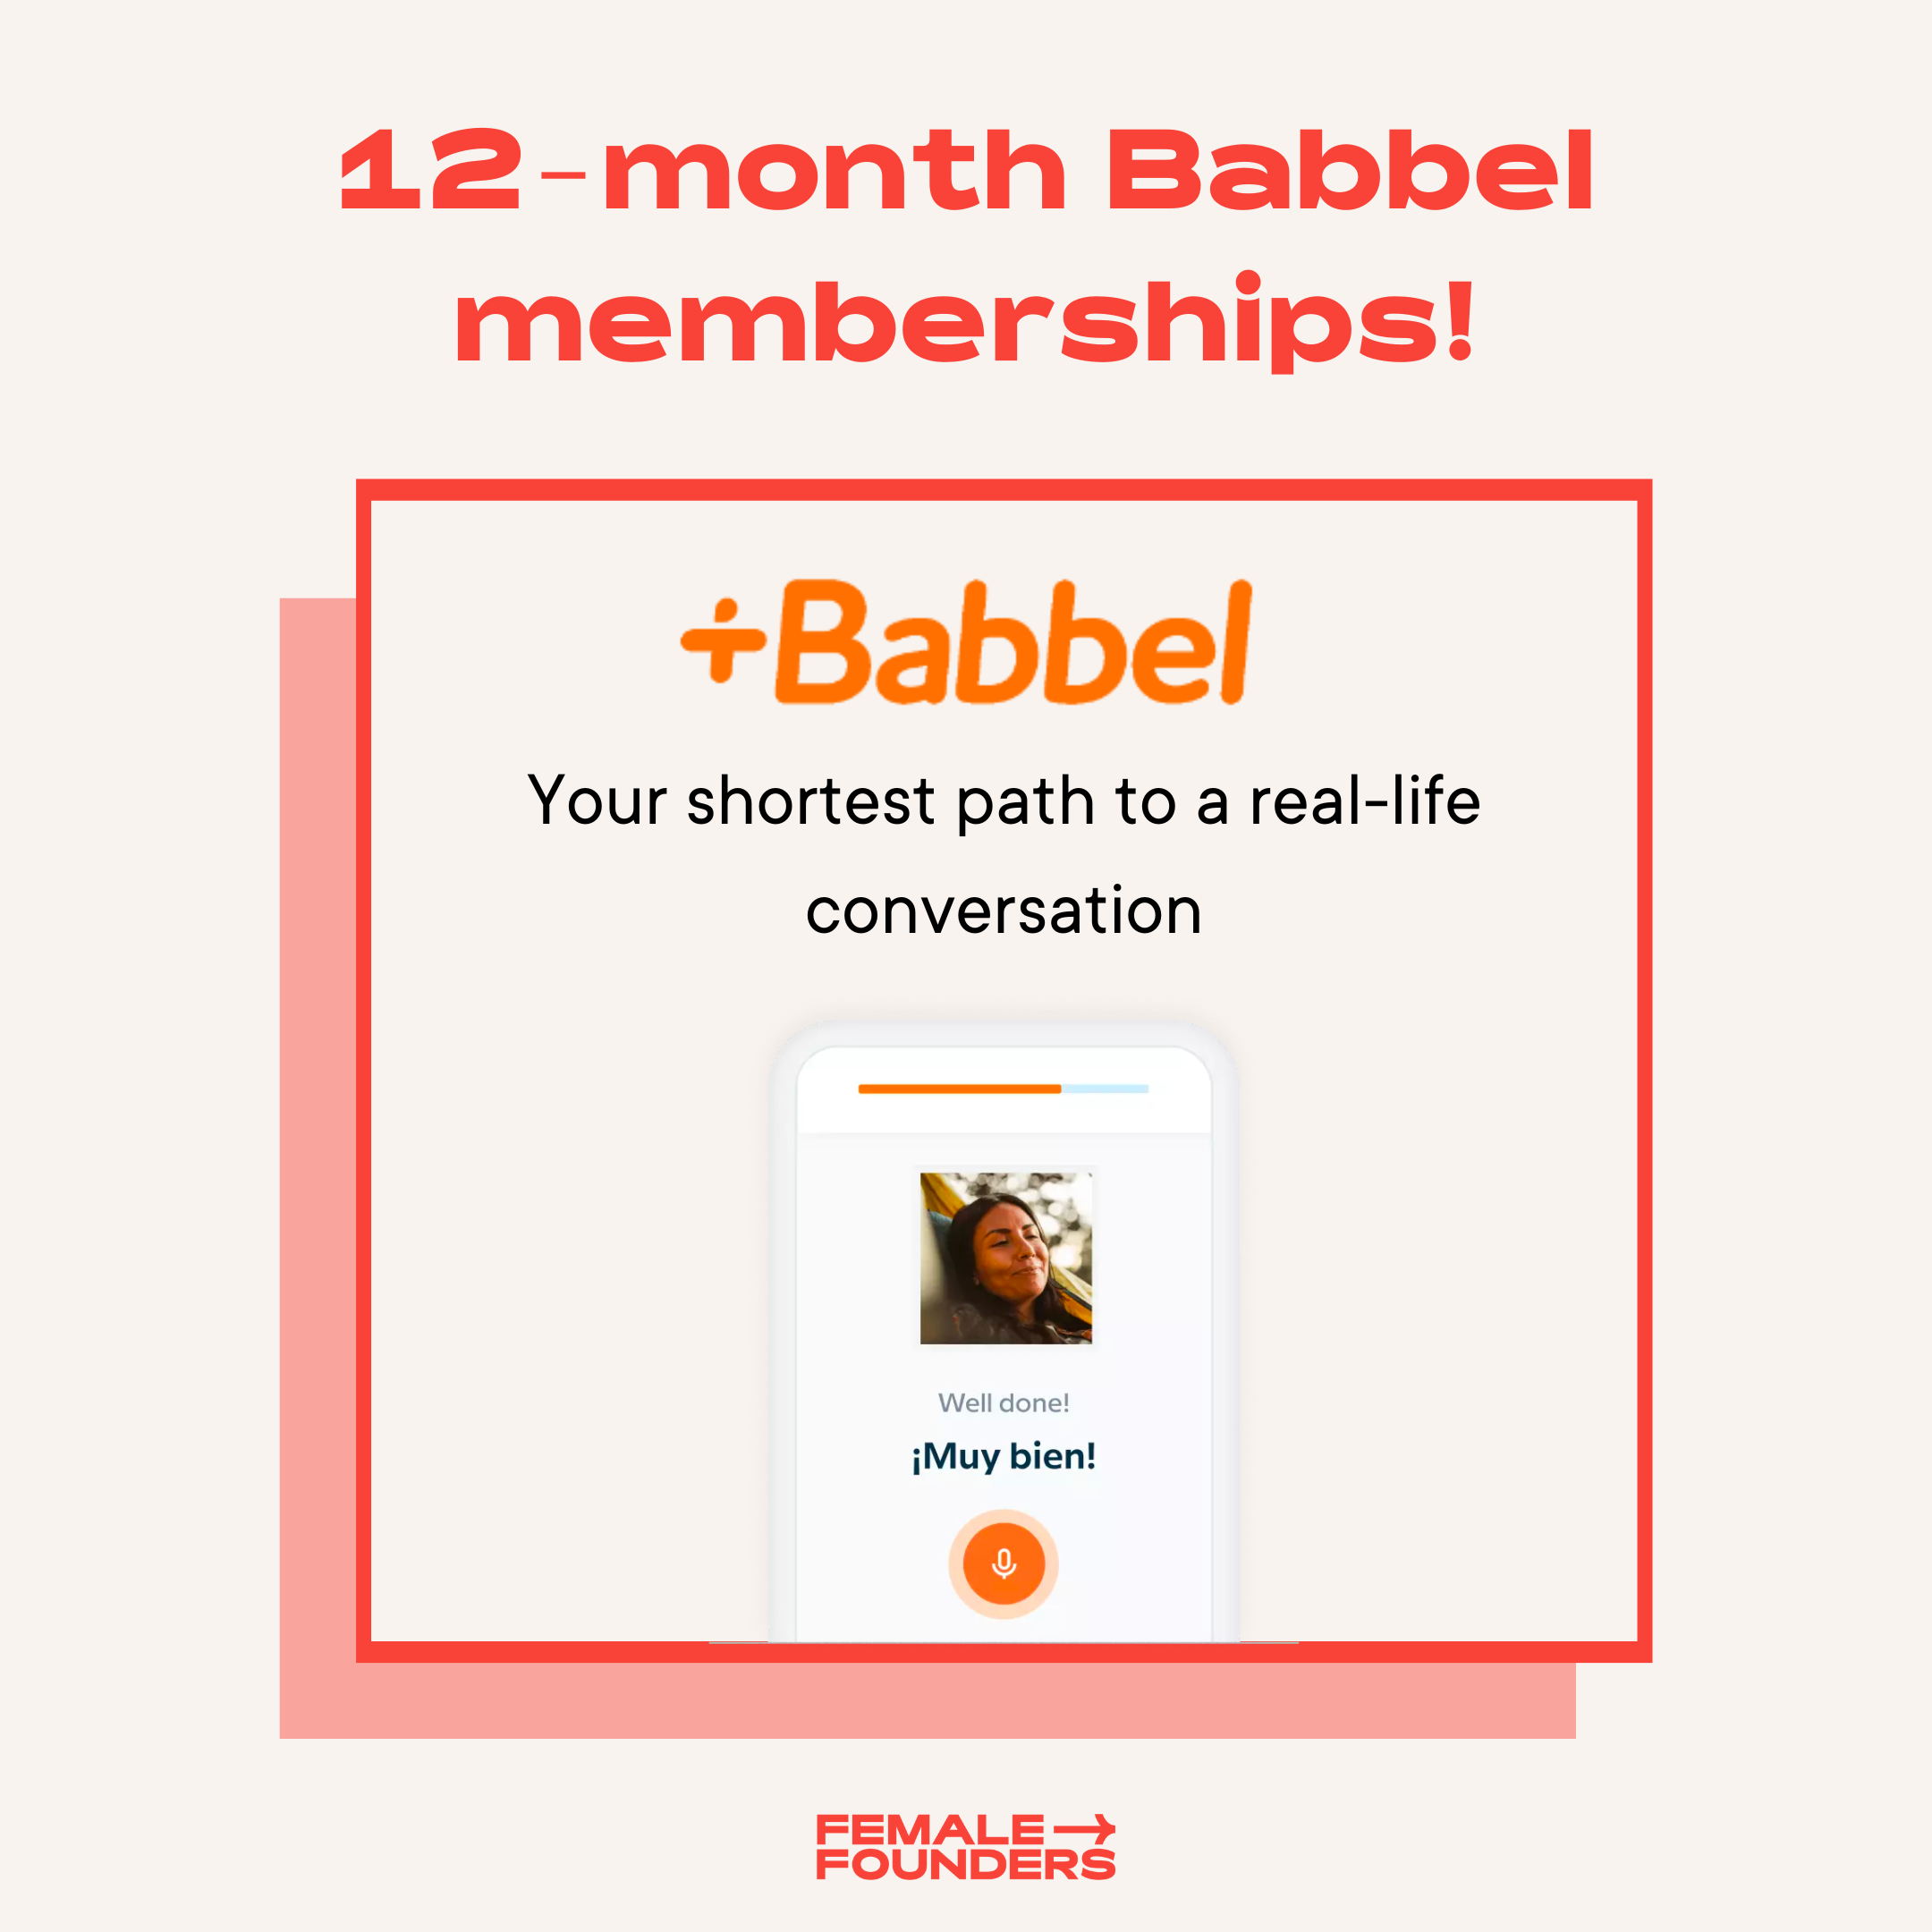 12 month Babbel memberships